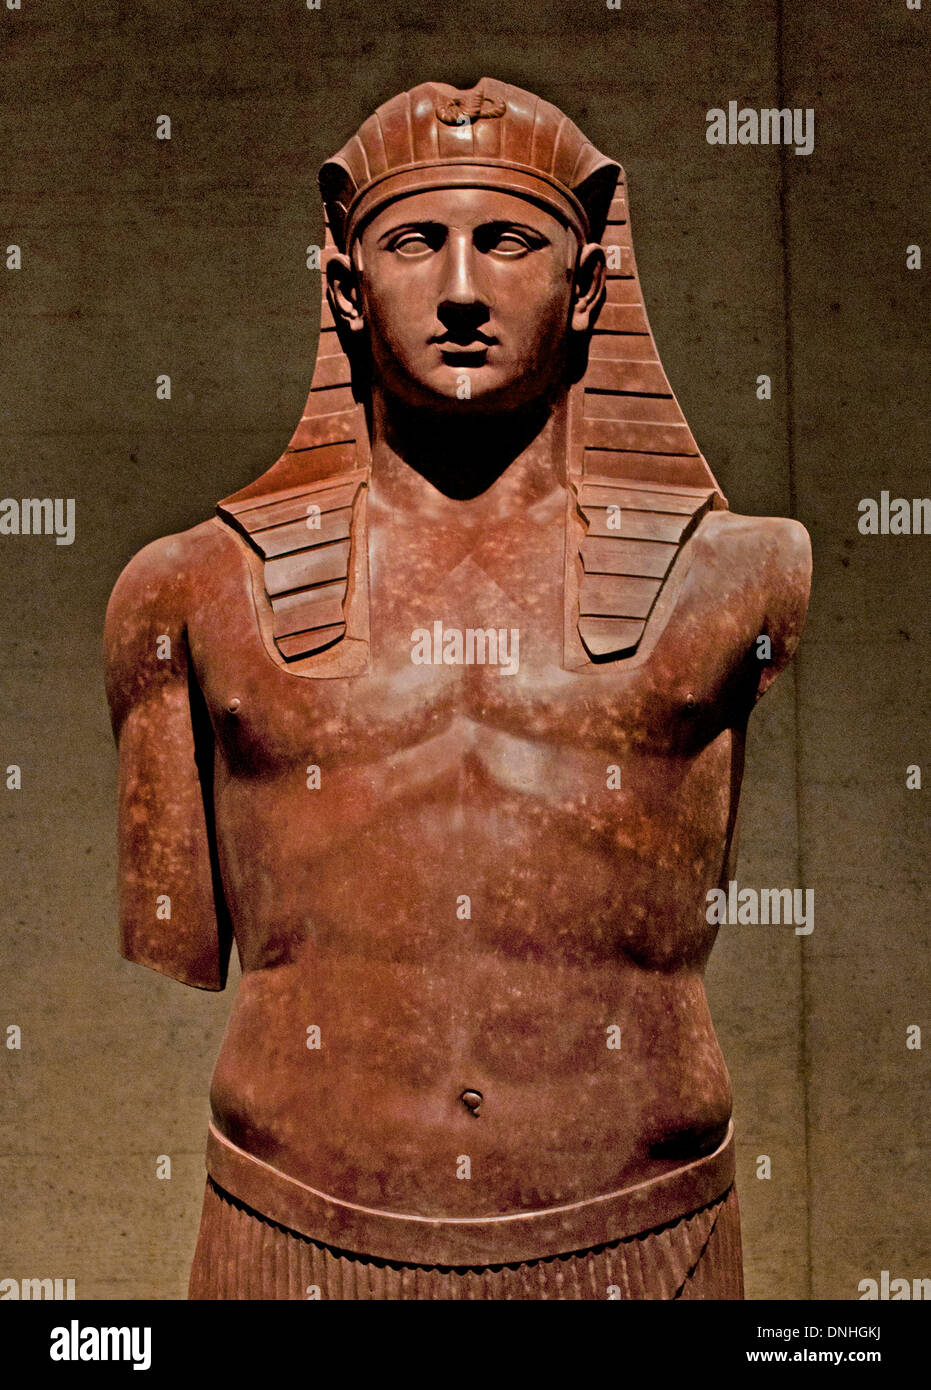 Egyptianized la figura de Antínoo, un favorito del emperador Adriano. Mármol de Villa Adriana de Tivoli 135 AD Egipcia en Italia Foto de stock